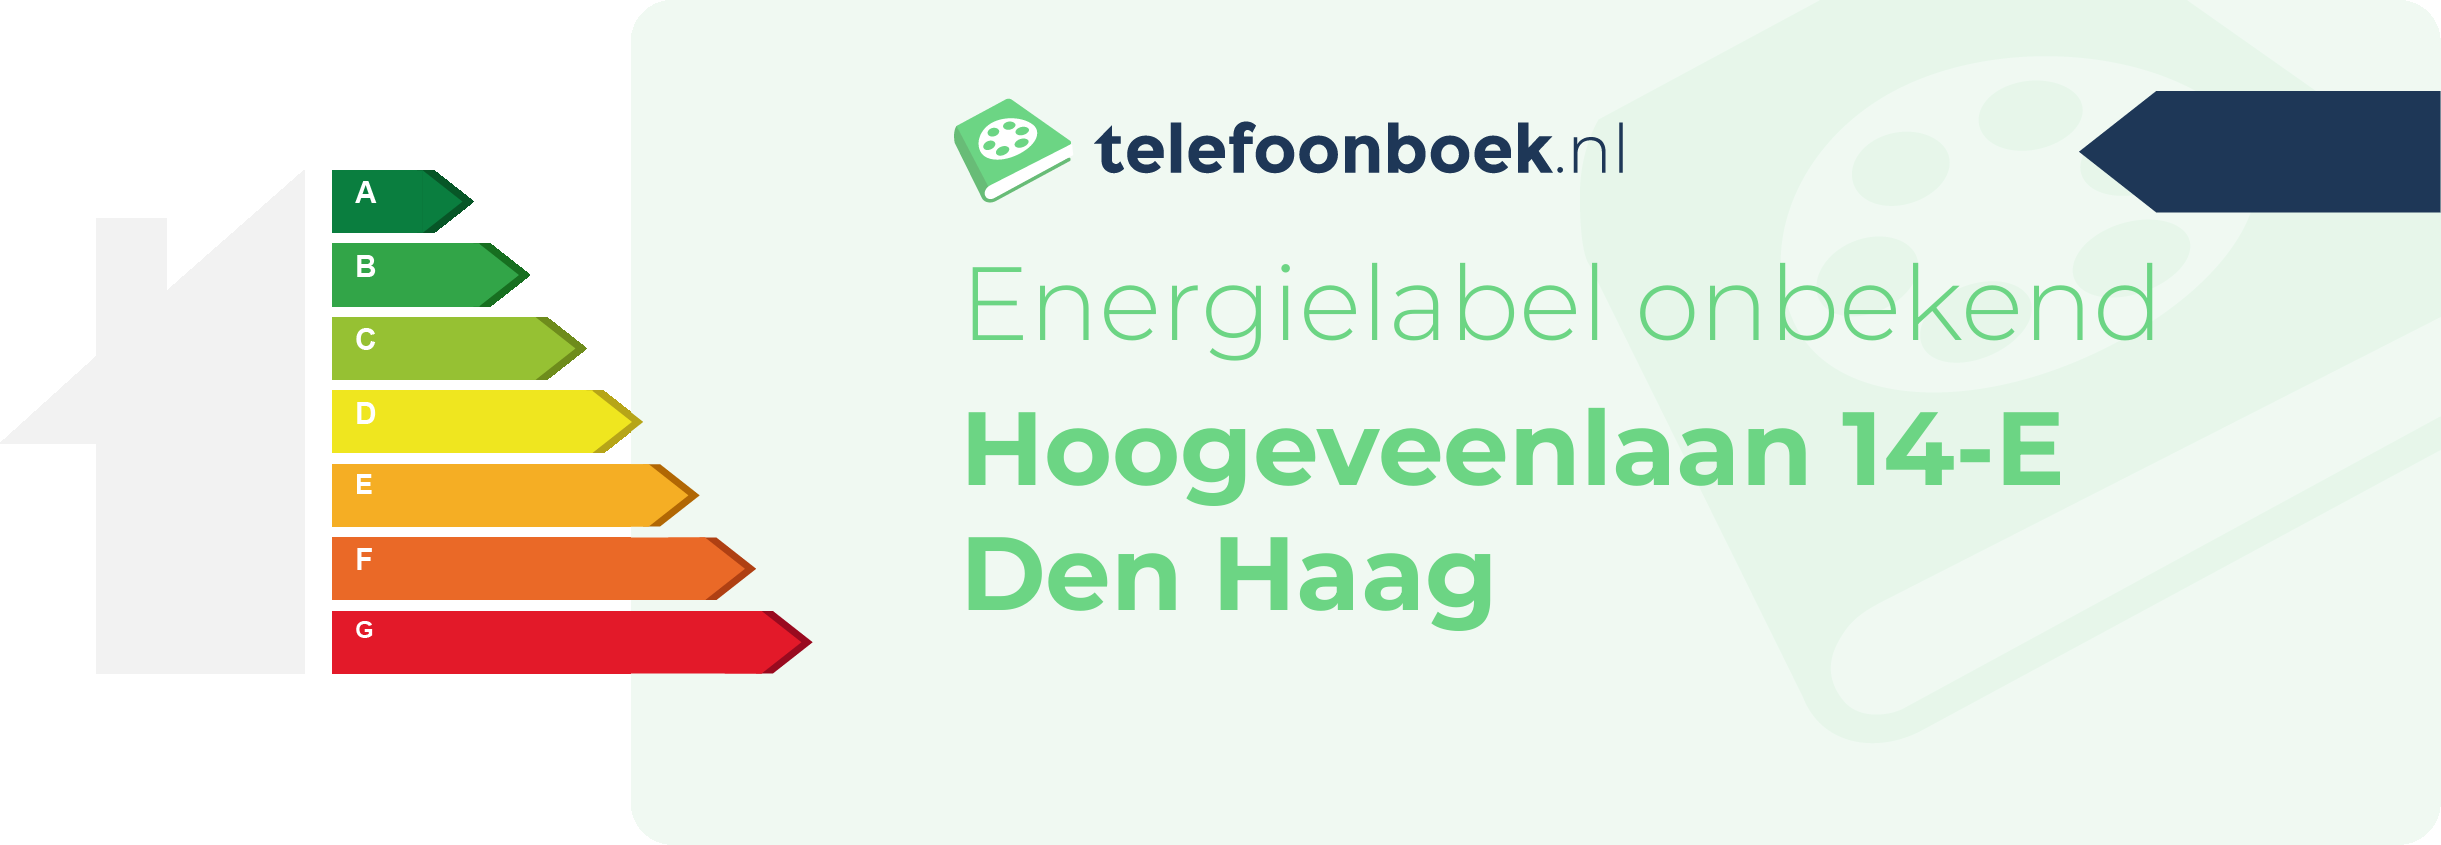 Energielabel Hoogeveenlaan 14-E Den Haag